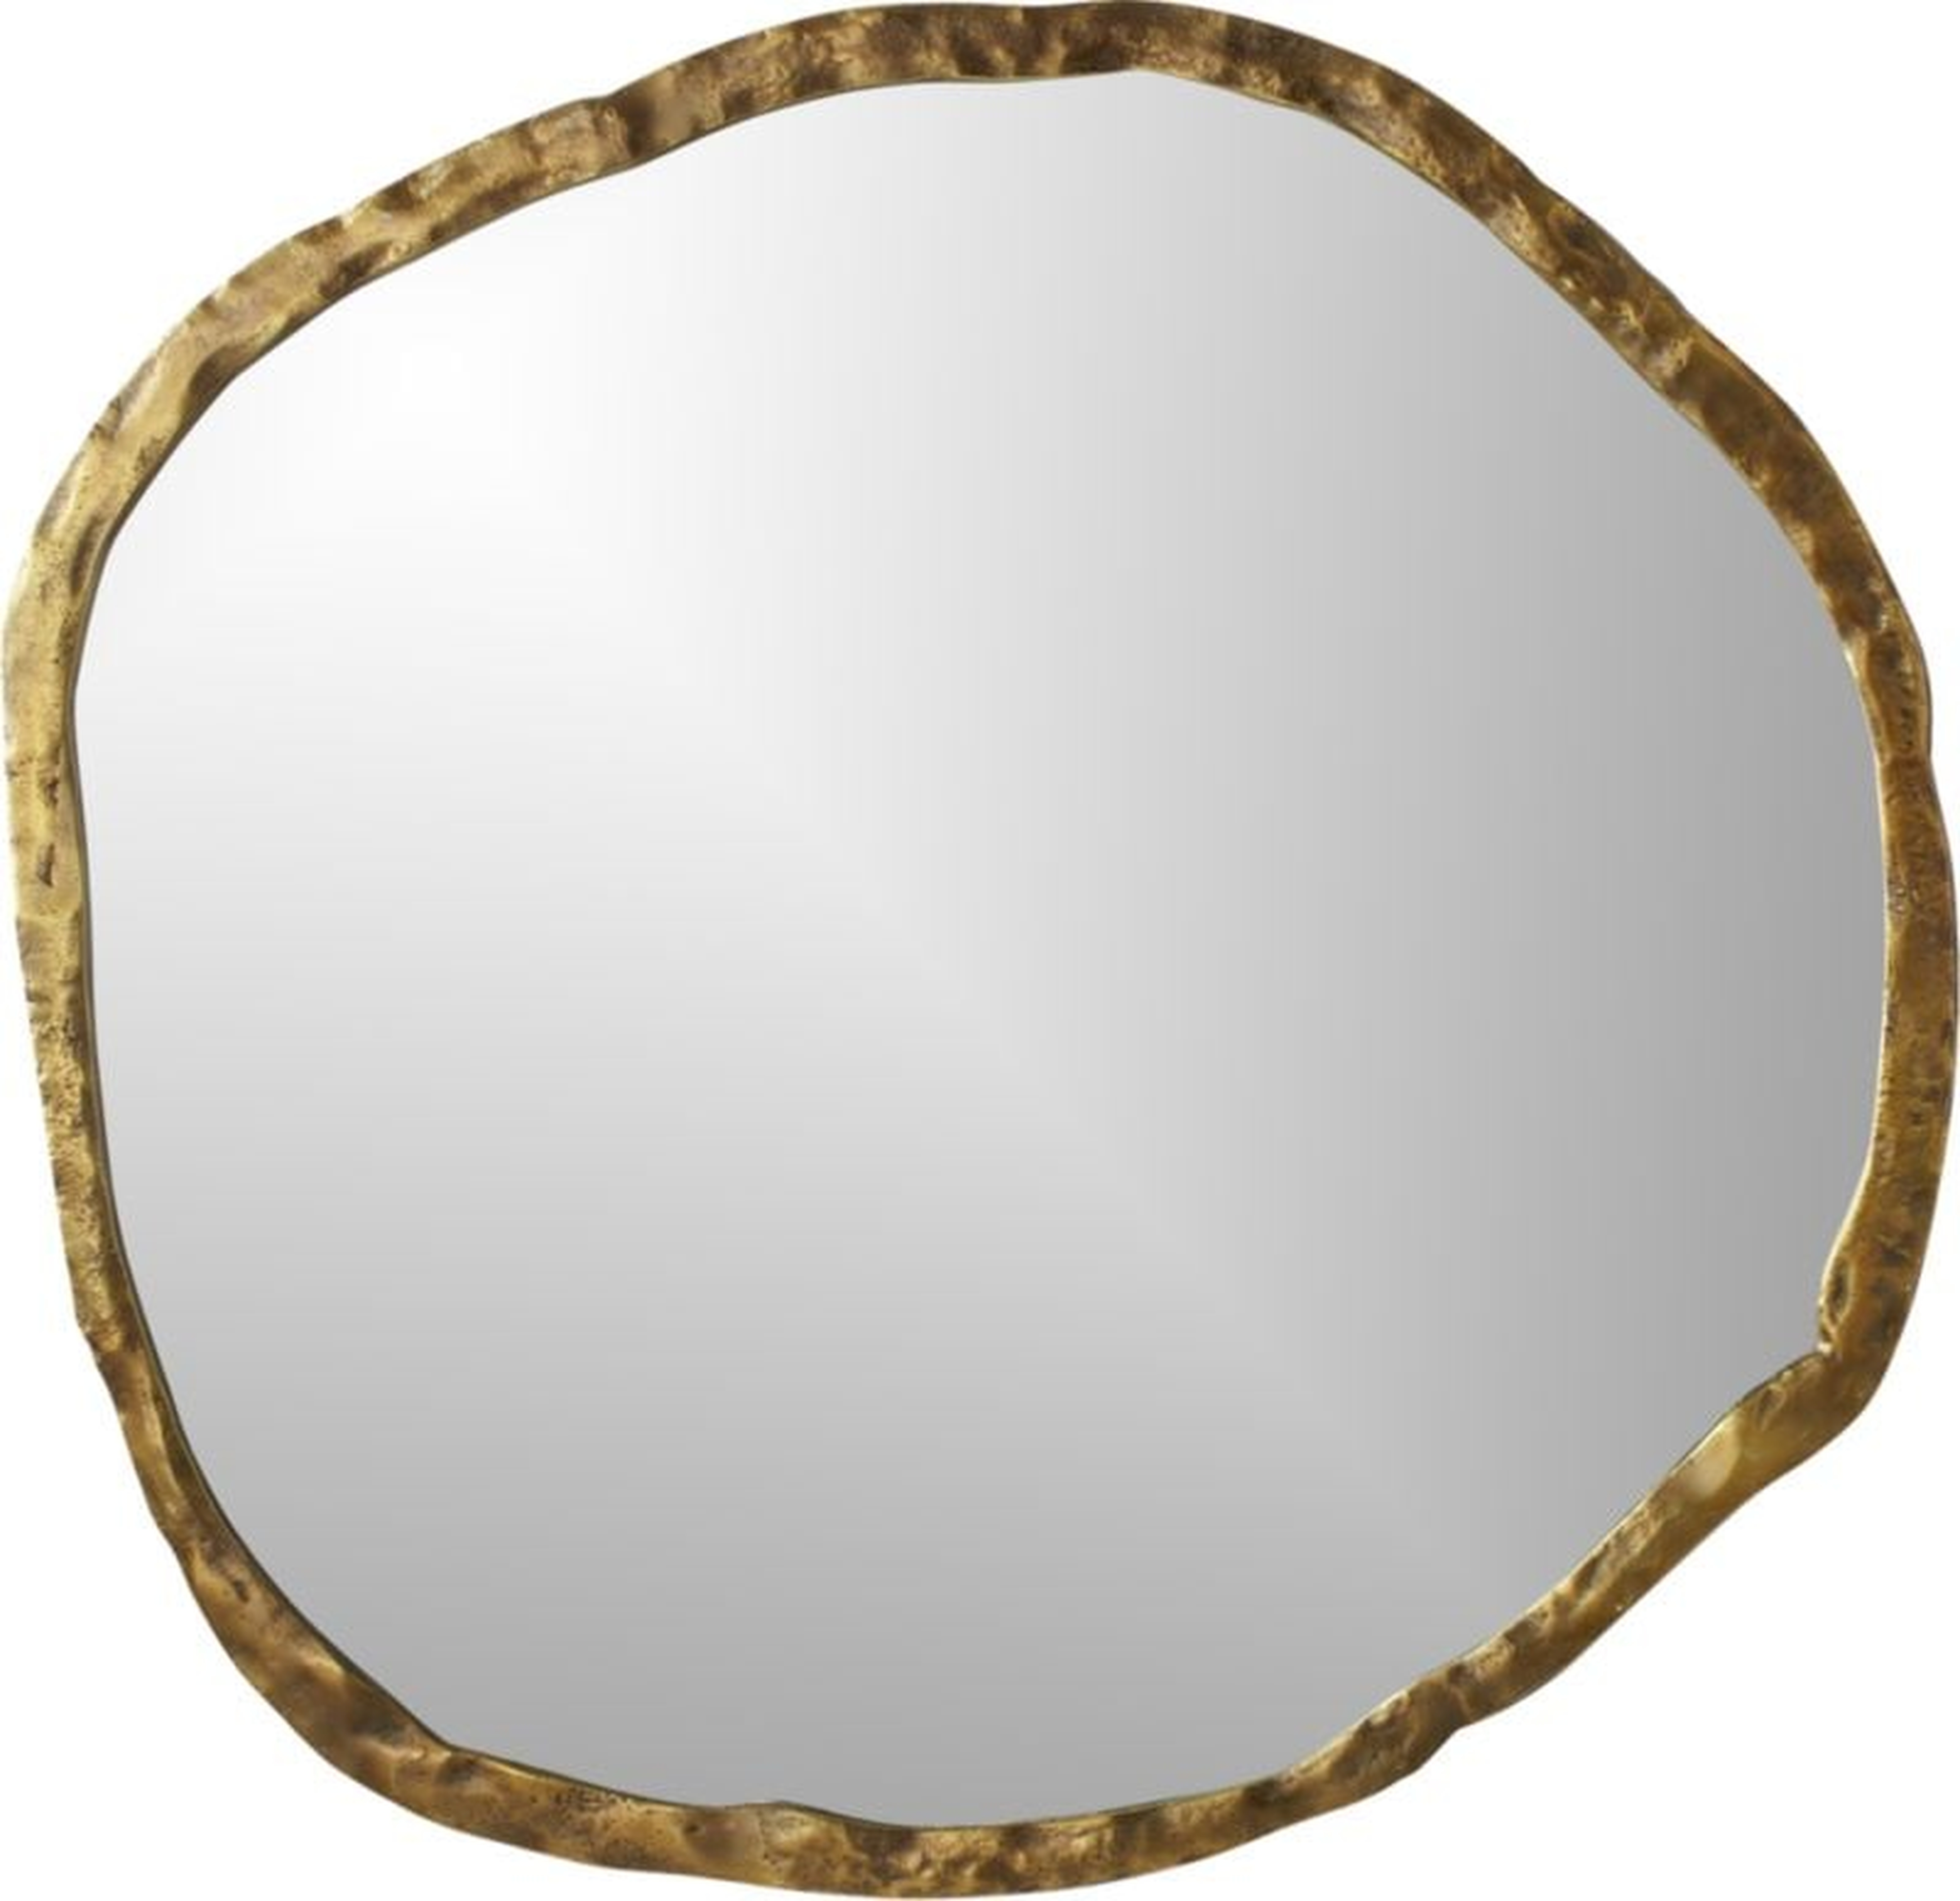 Abel Round Wall Mirror, Gold, 48" - CB2